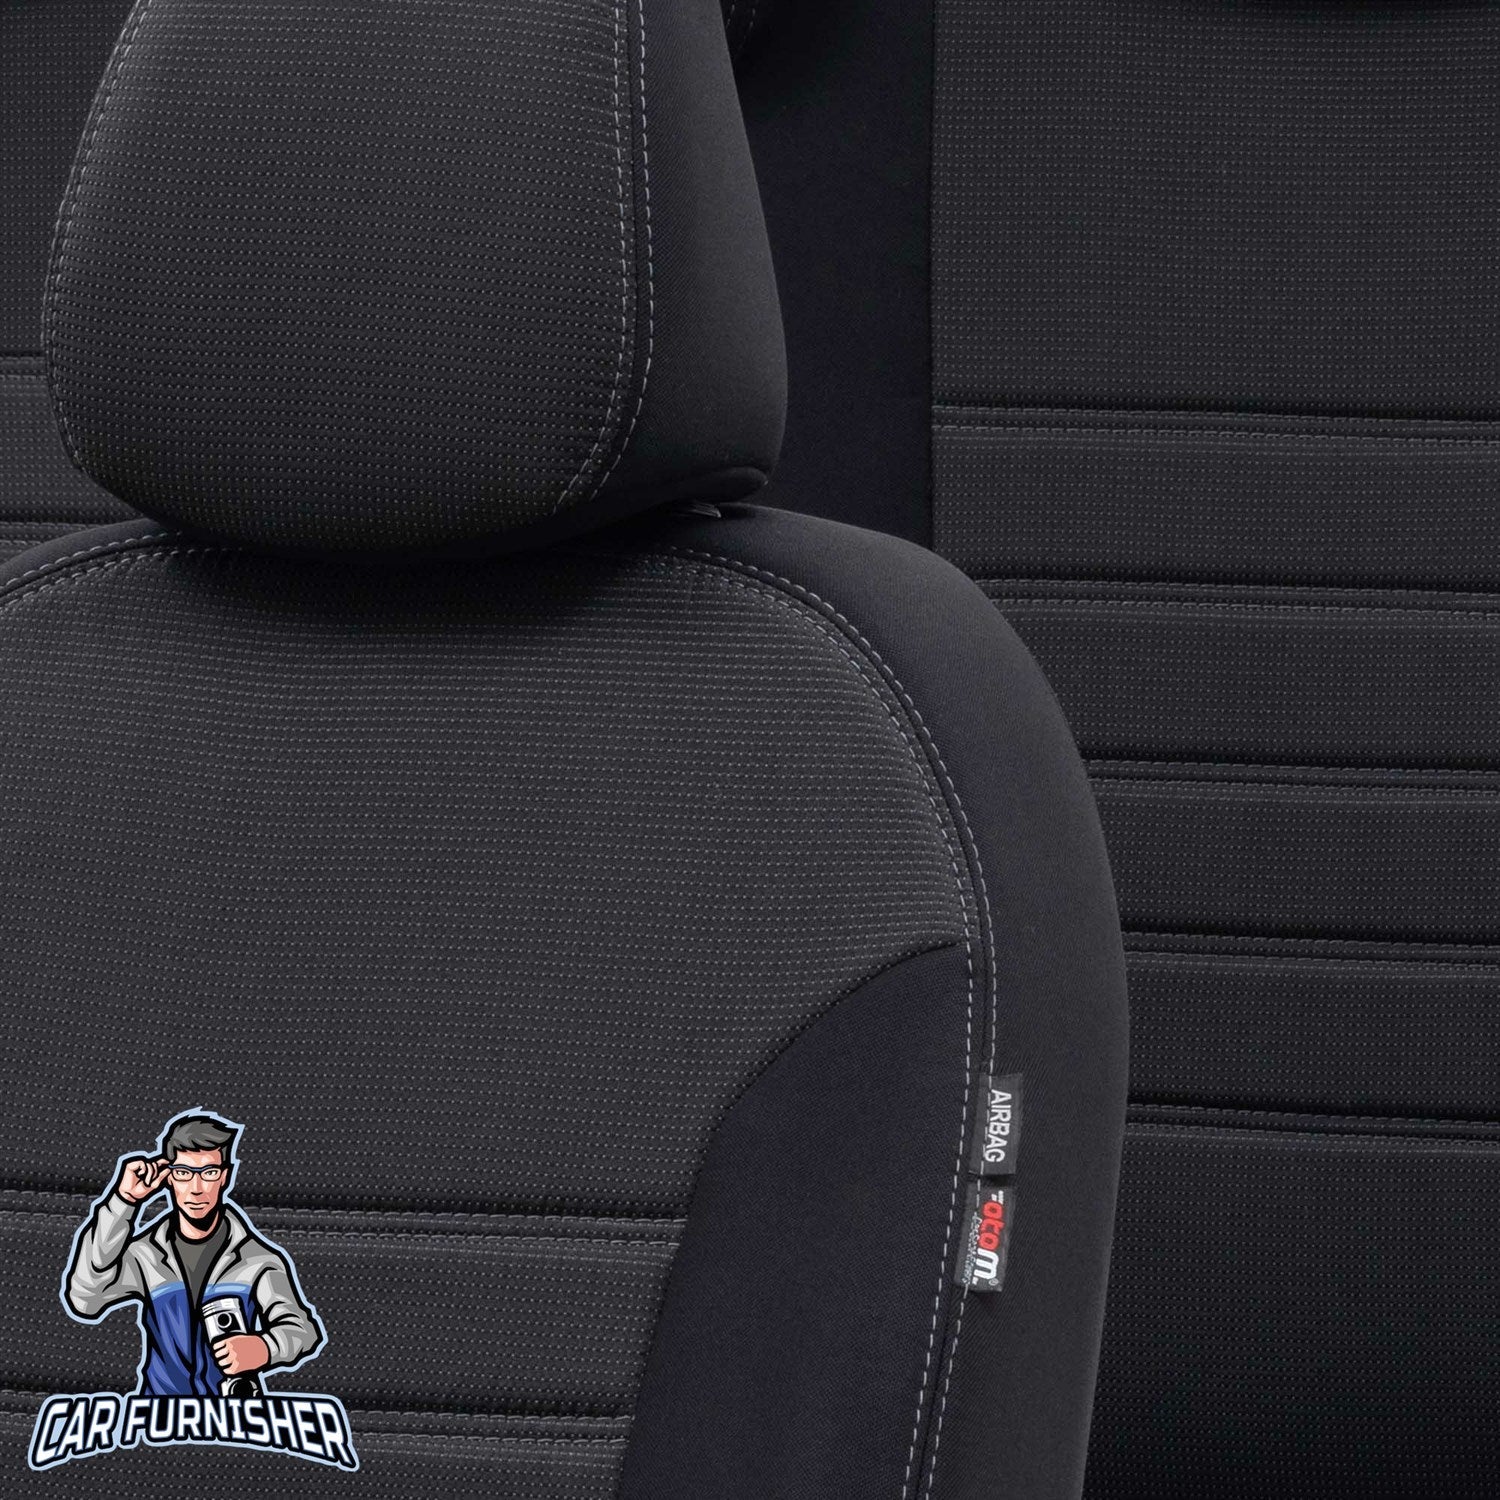 Toyota Auris Seat Cover Original Jacquard Design Dark Gray Jacquard Fabric